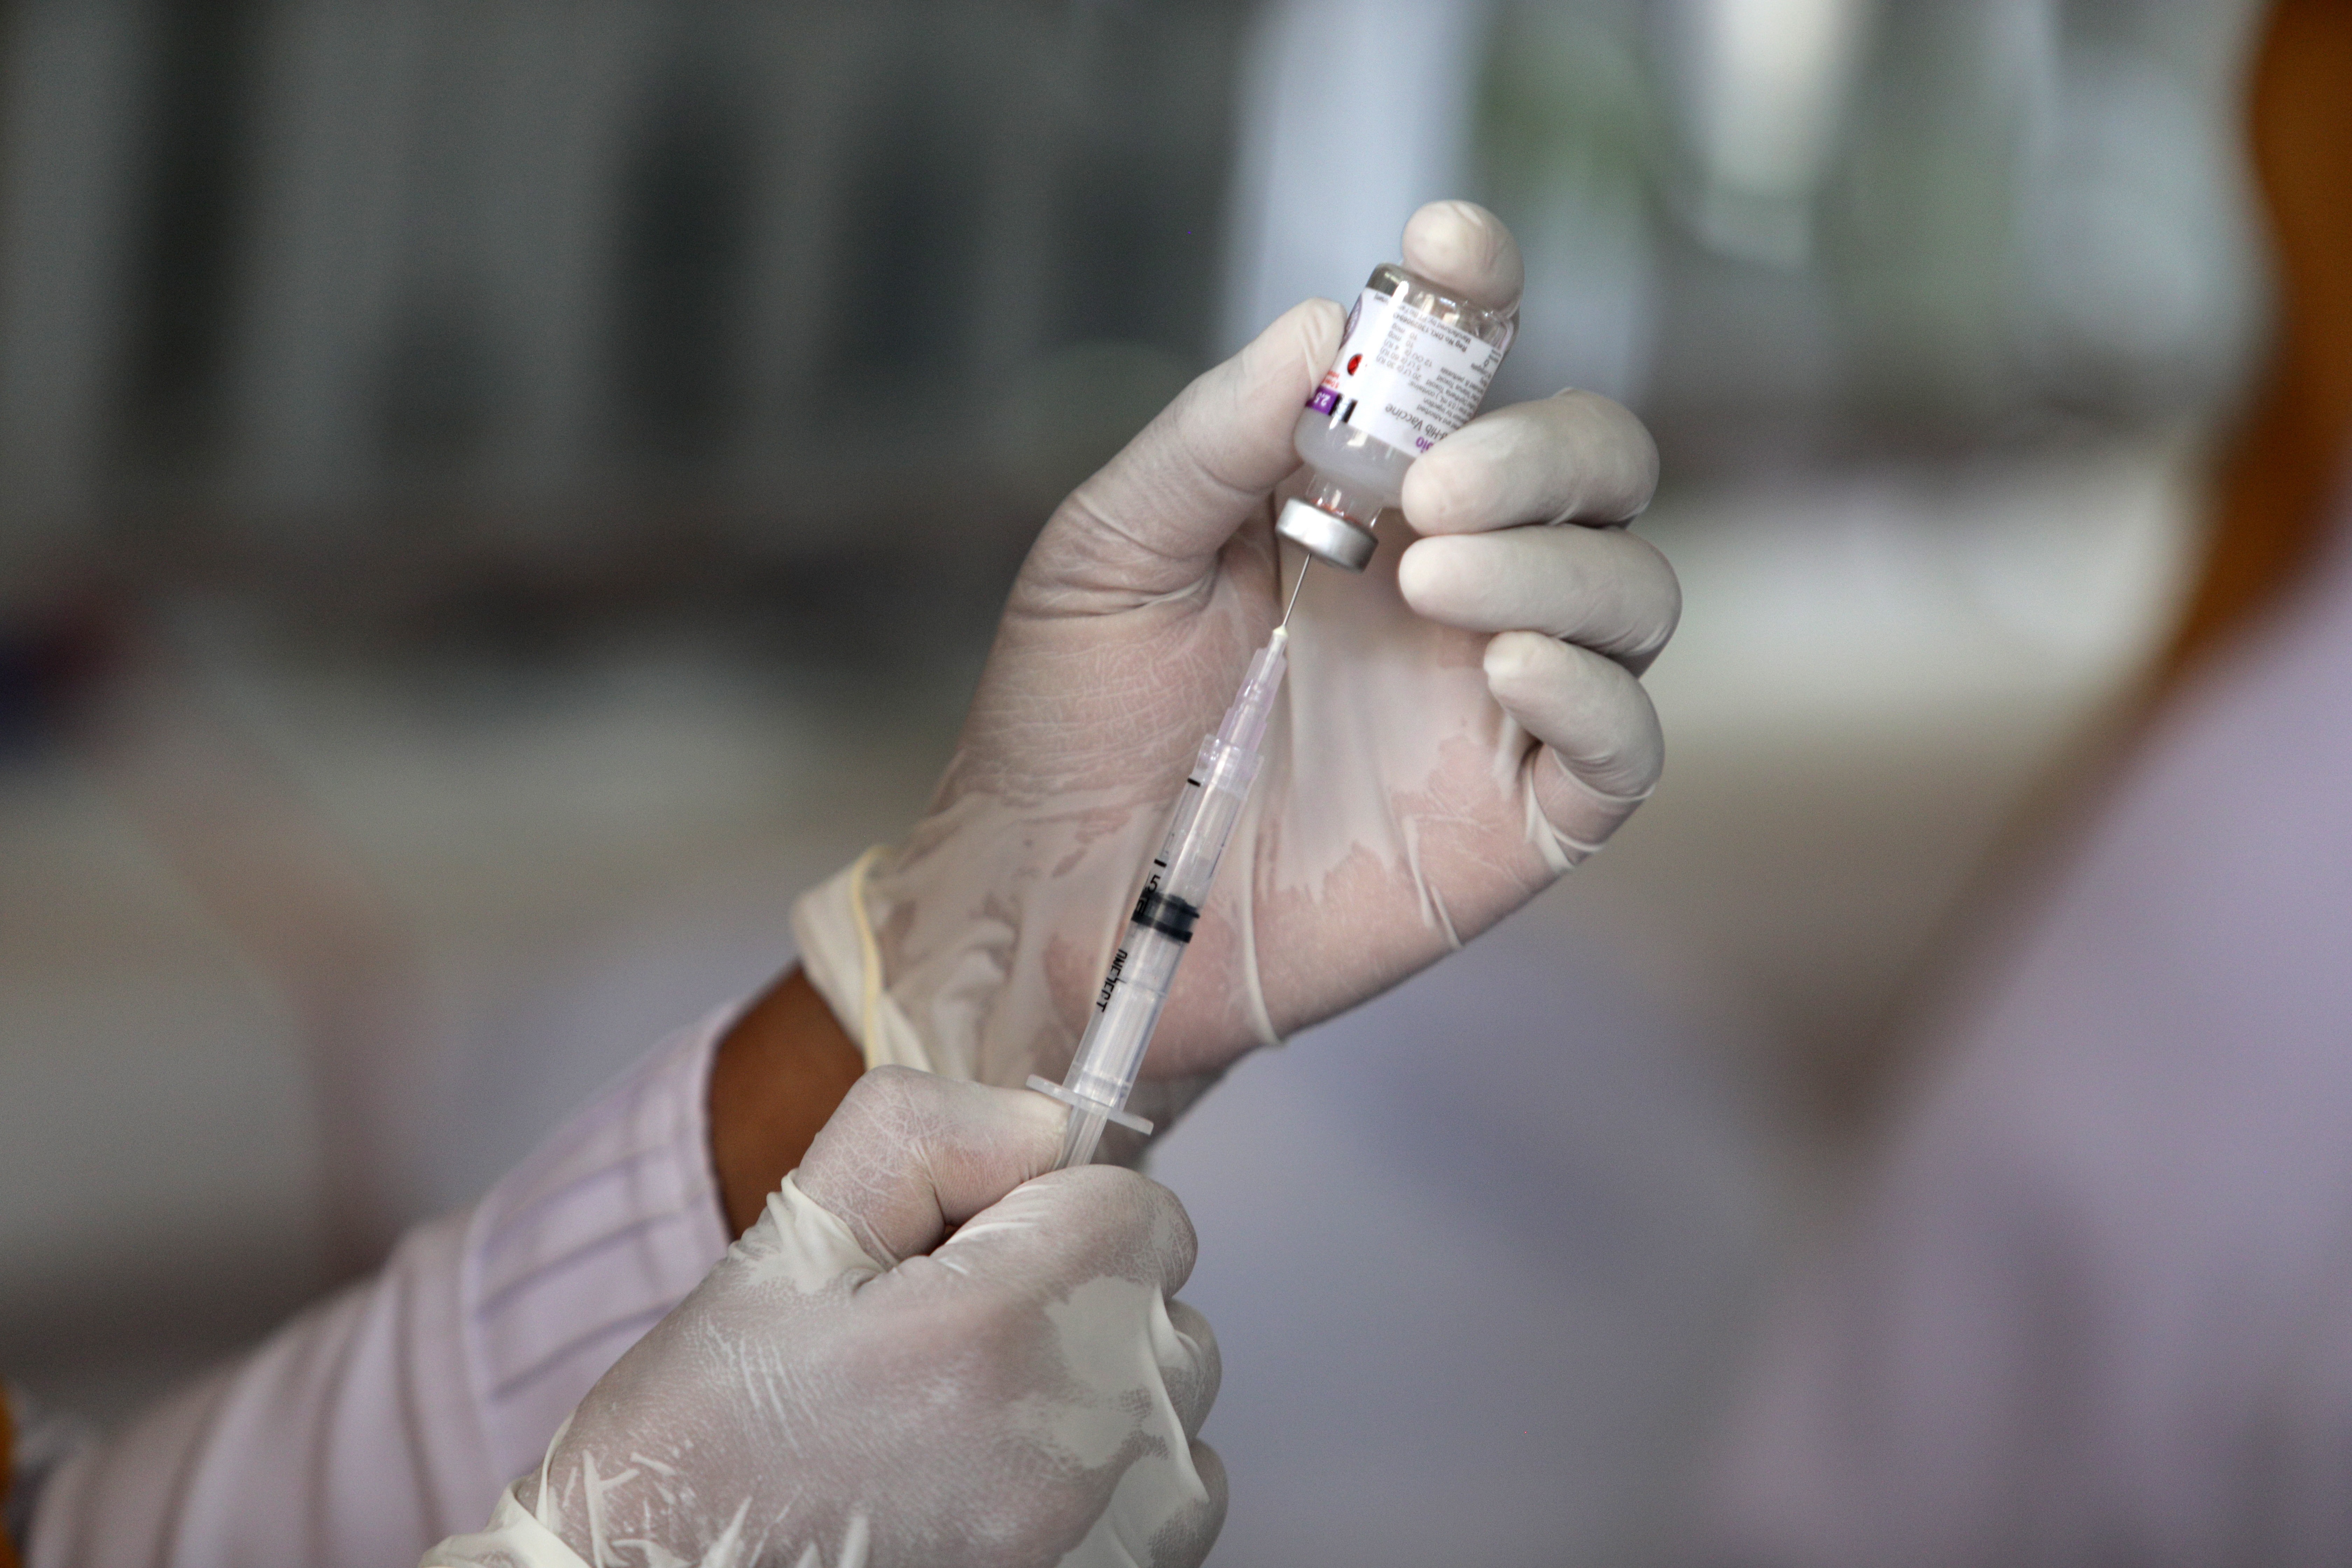 La FDA ya adelantó que aprobará una vacuna que demuestre 50% de efectividad, y que recibirán excepcionalmente una "aprobación de emergencia" (Efe)
